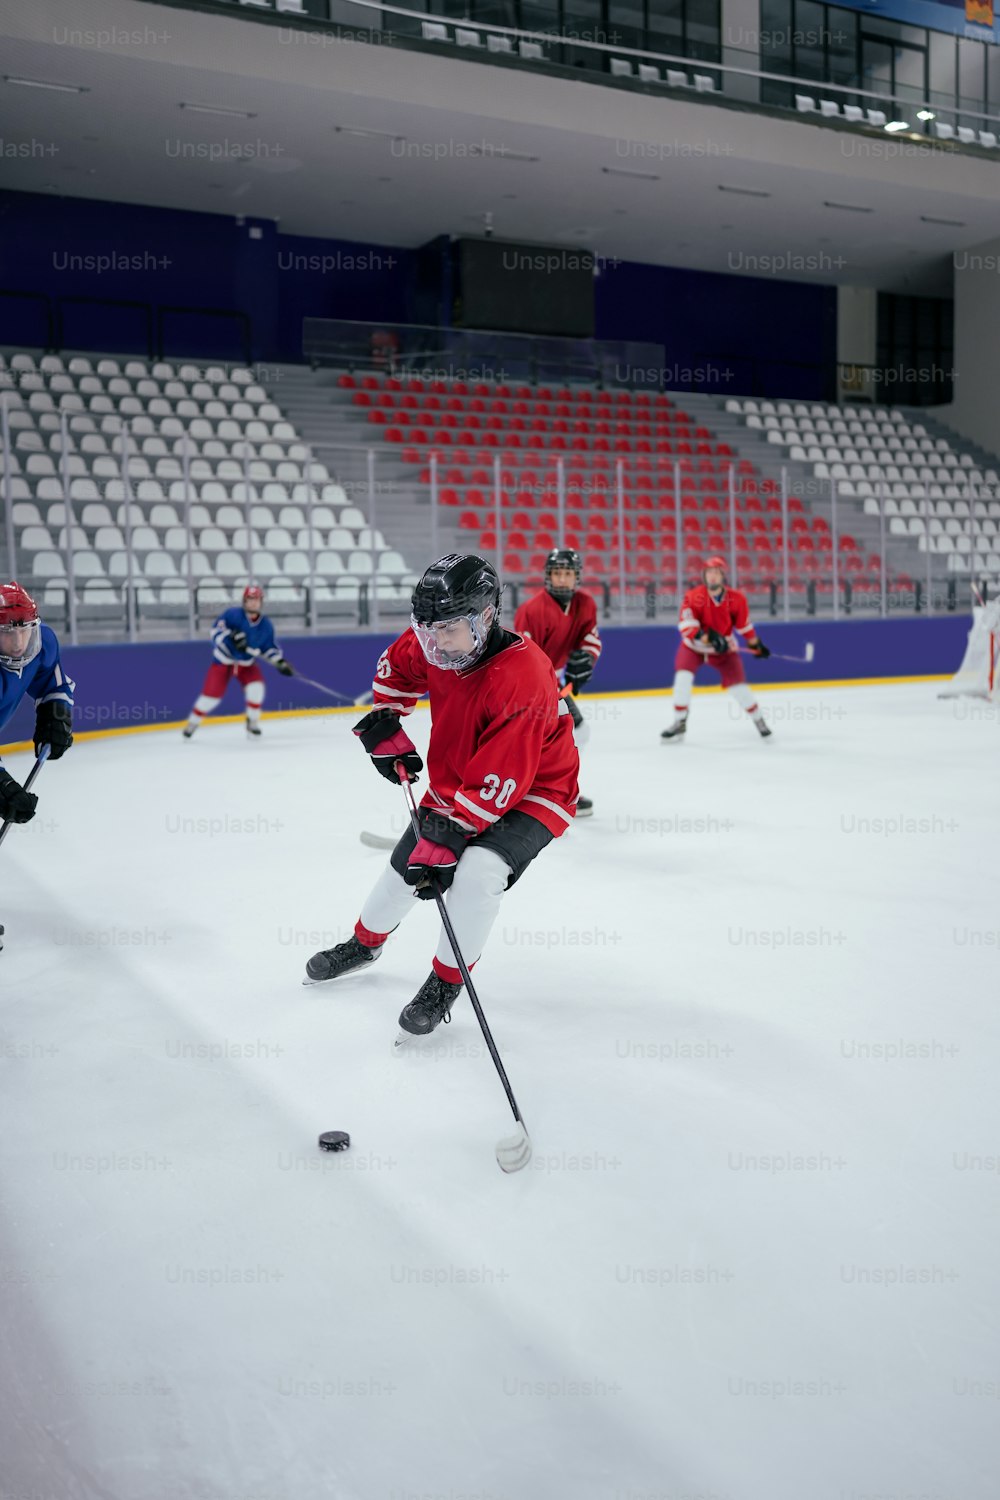 Un gruppo di giovani che giocano una partita di hockey su ghiaccio